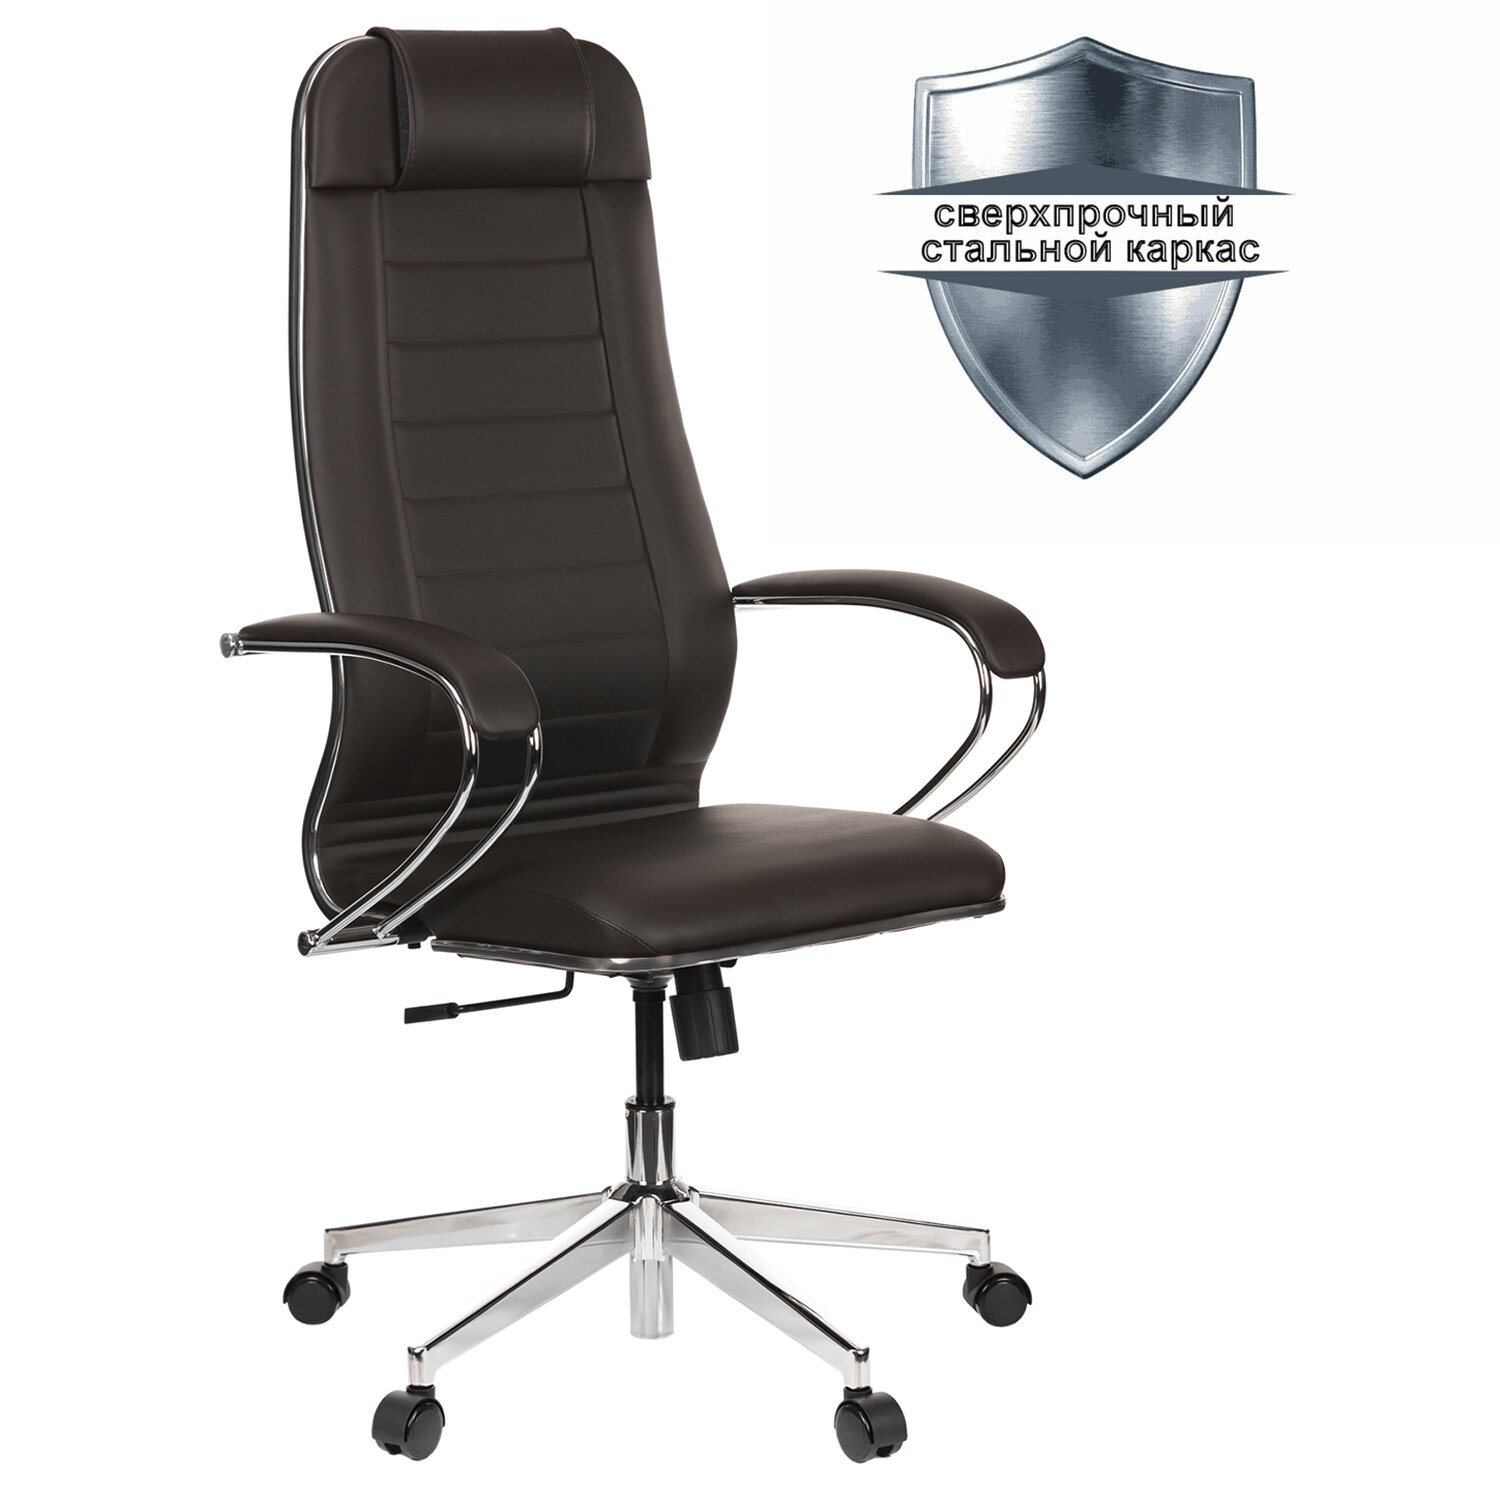 Кресло офисное МЕТТА К-29 хром, рецик. кожа, сиденье и спинка мягкие, темно-коричневое